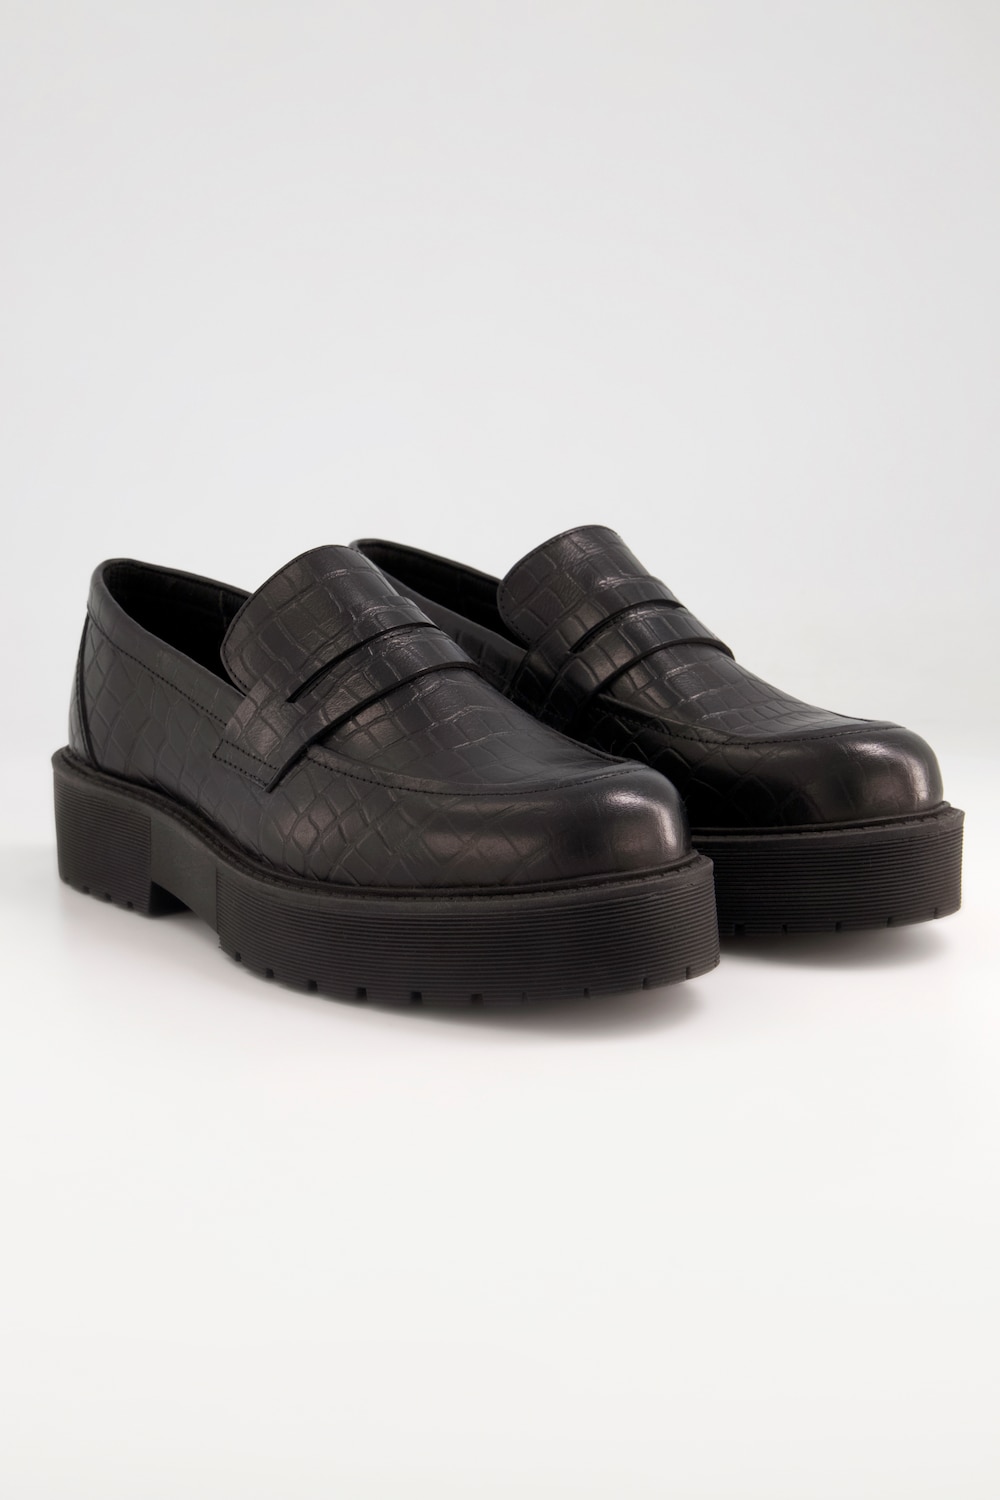 Grote Maten loafers, Dames, zwart, Maat: 41, Leer/Synthetische vezels, Studio Untold